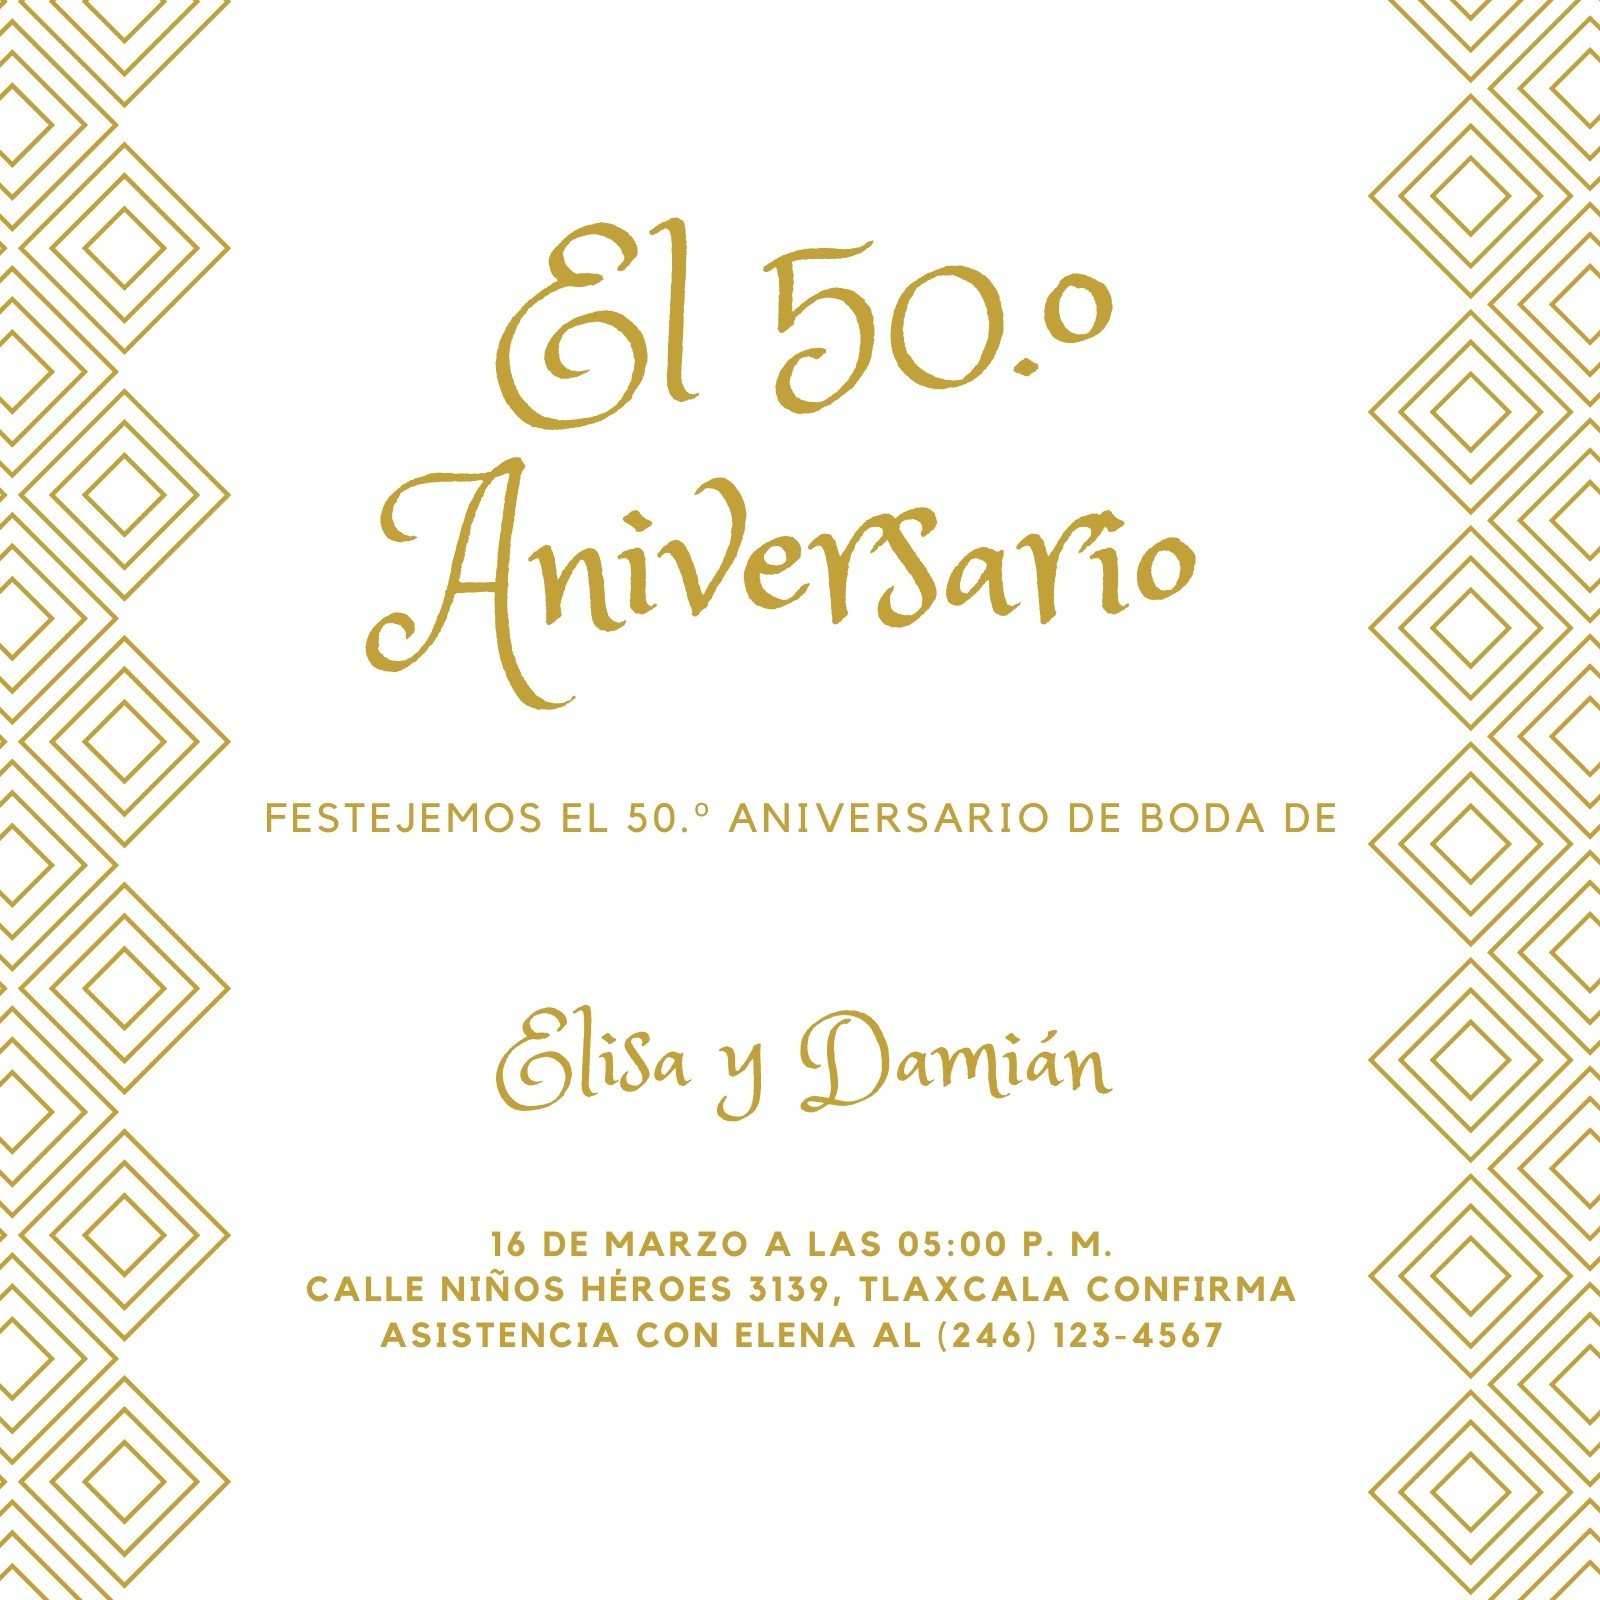 invitaciones de boda en espanol ejemplos